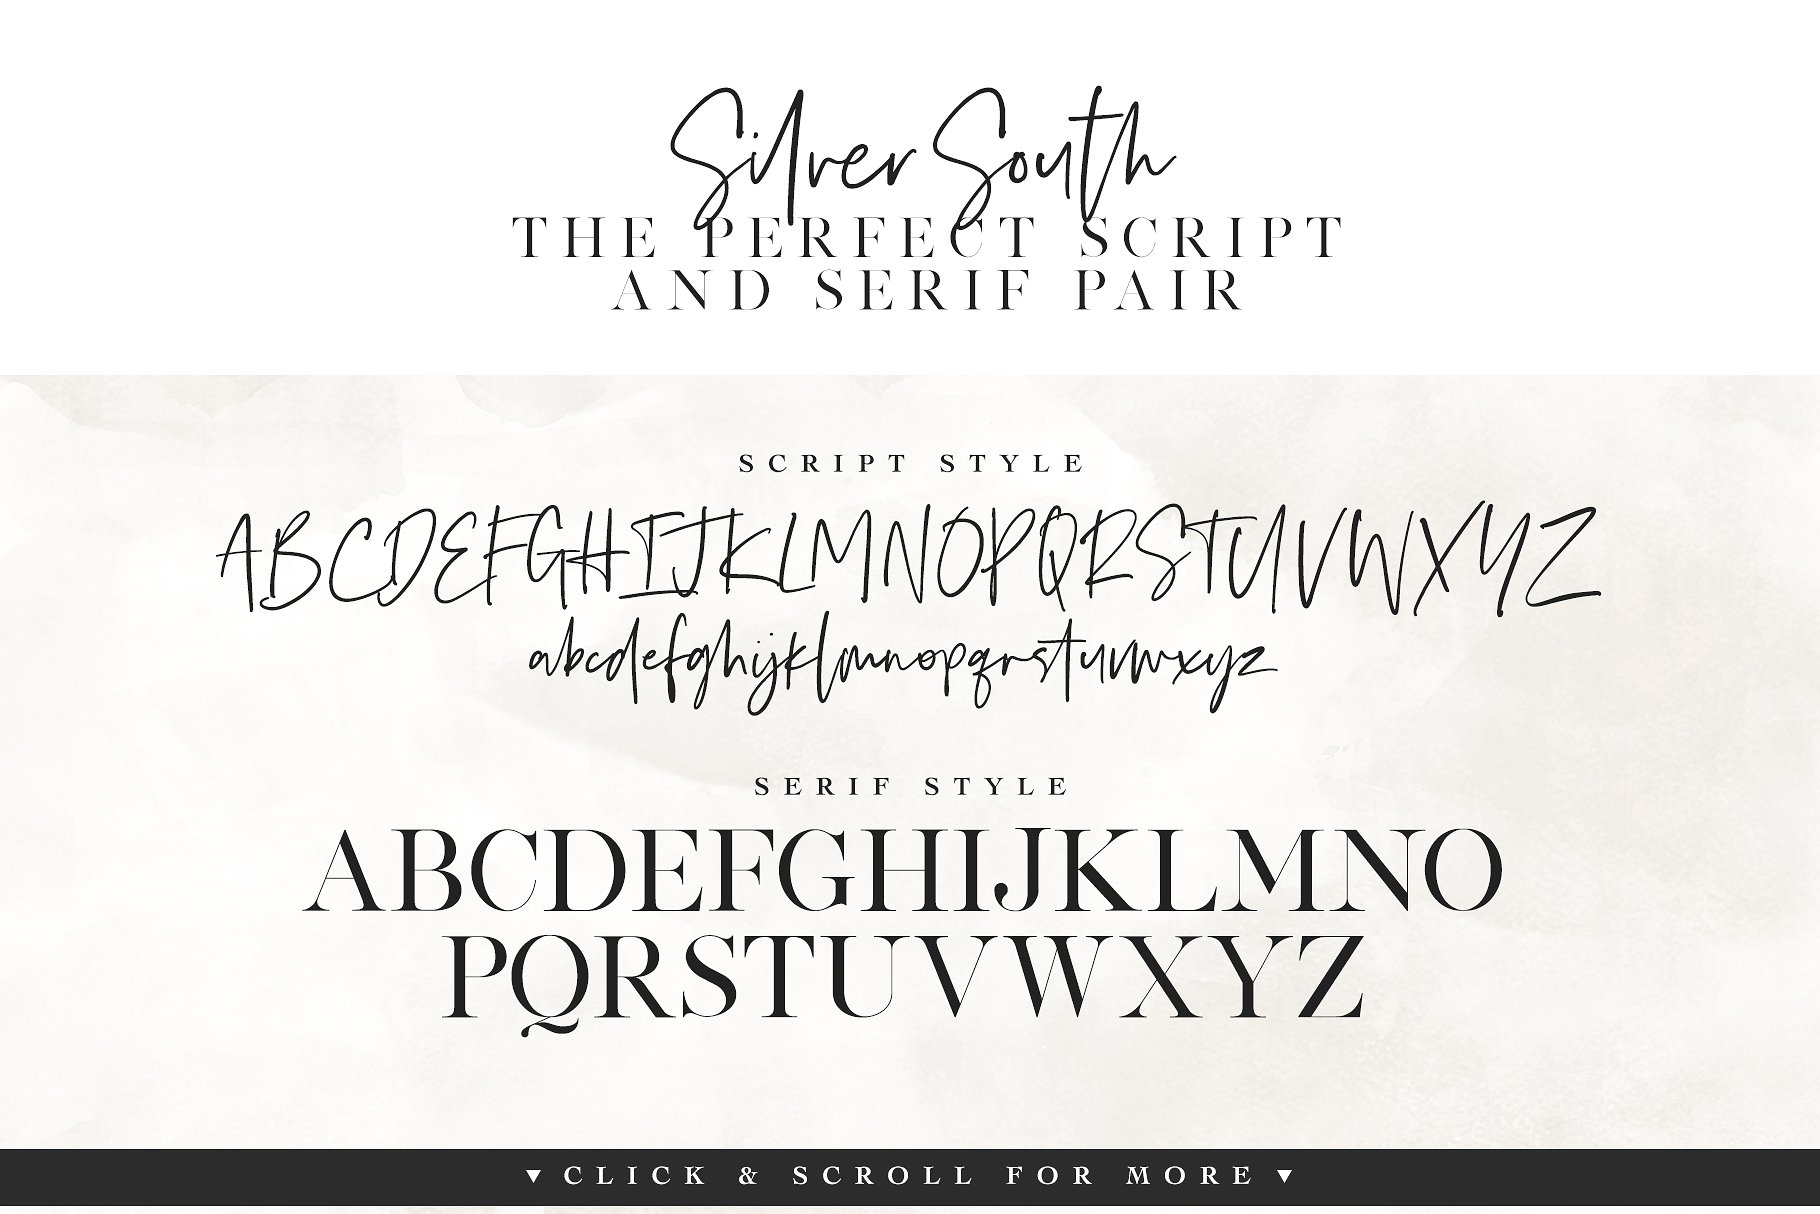 时尚的衬线字体和脚本字体 Silver South Font